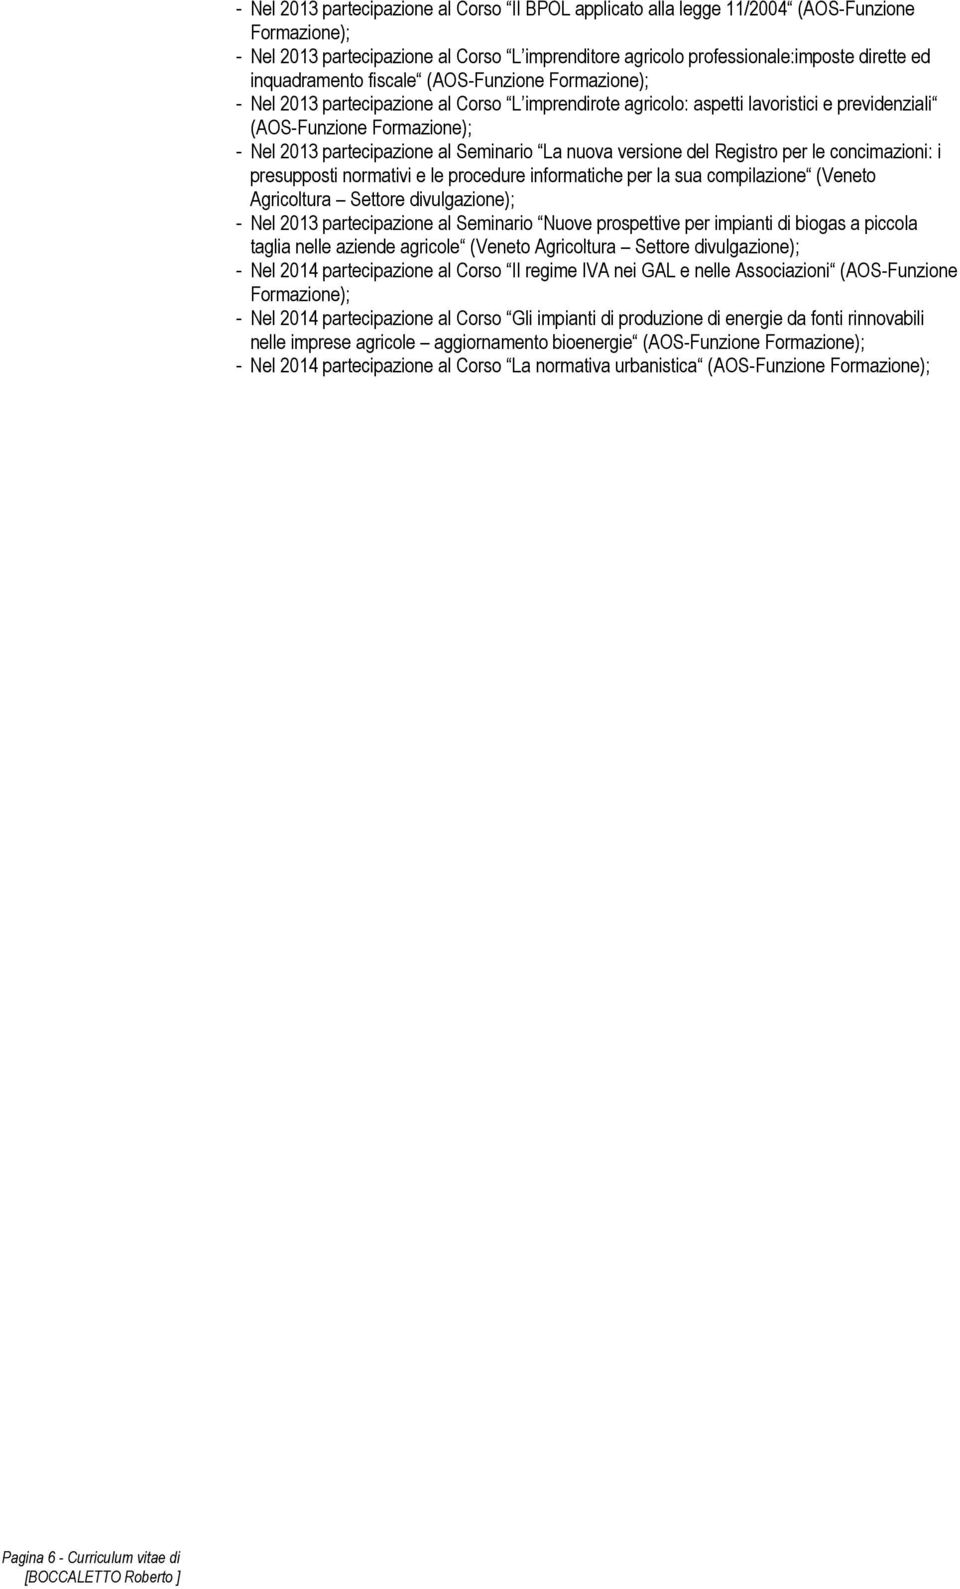 Formazione); - Nel 2013 partecipazione al Seminario La nuova versione del Registro per le concimazioni: i presupposti normativi e le procedure informatiche per la sua compilazione (Veneto Agricoltura